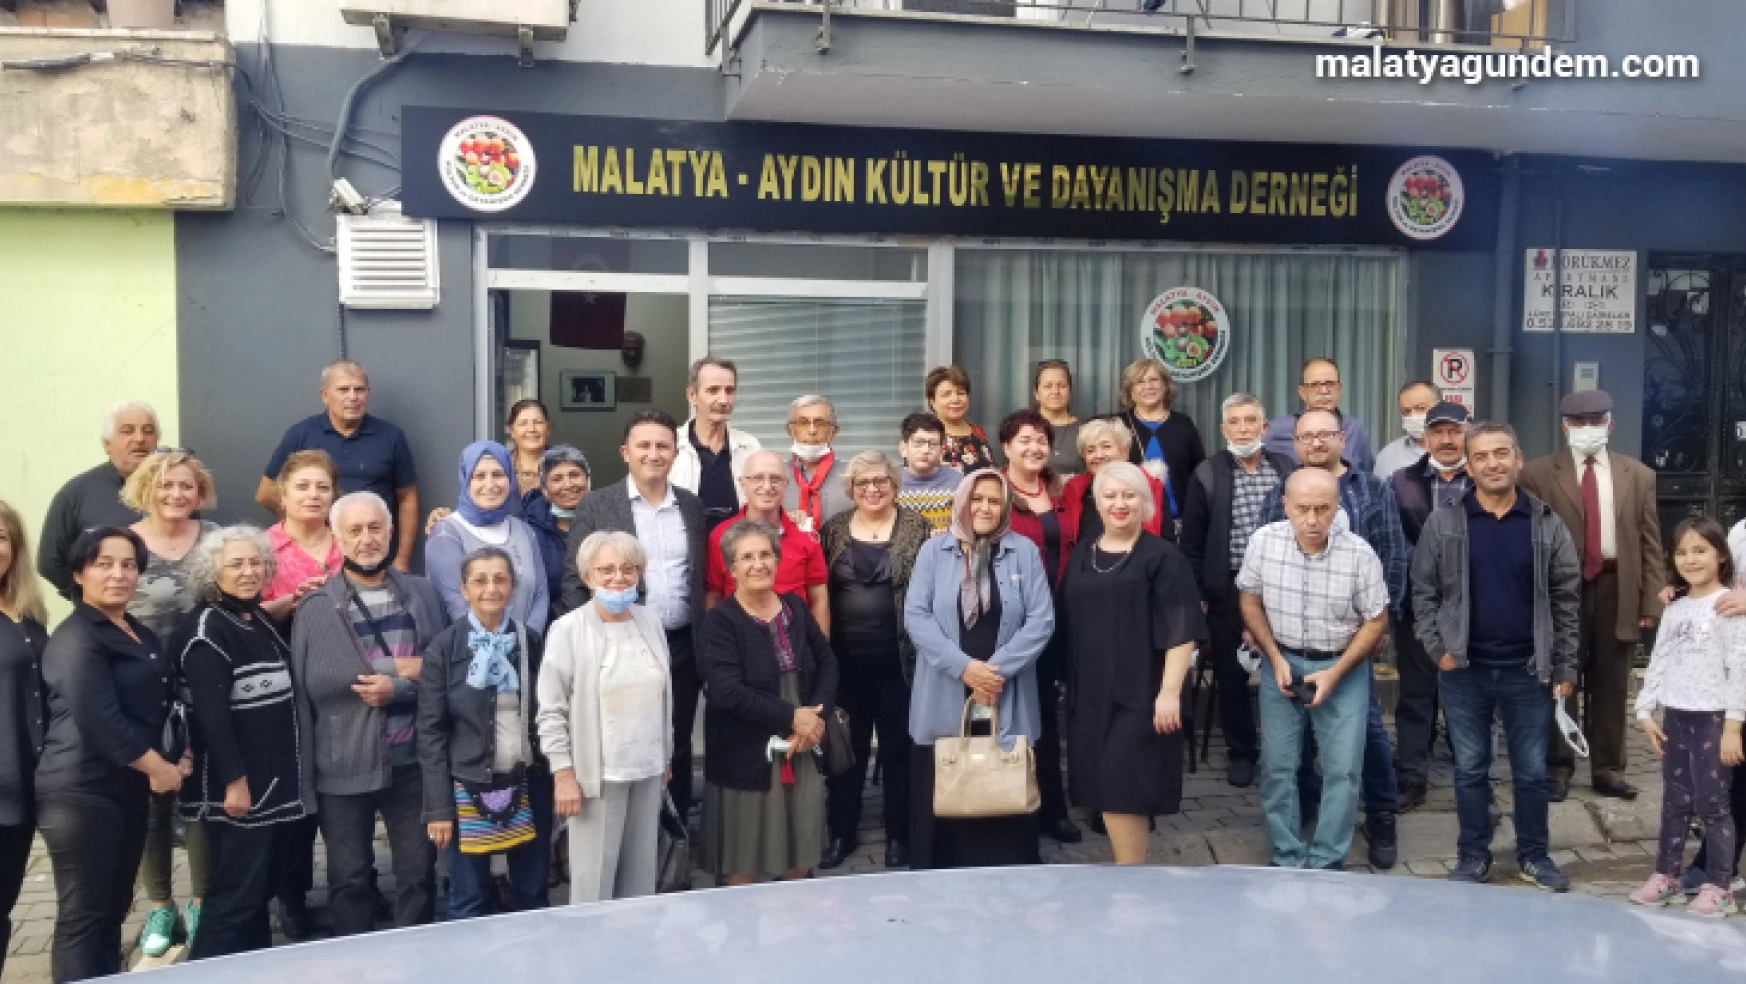 Malatya - Aydın kültür ve dayanışma  derneği yeni yerinde hizmete açıldı